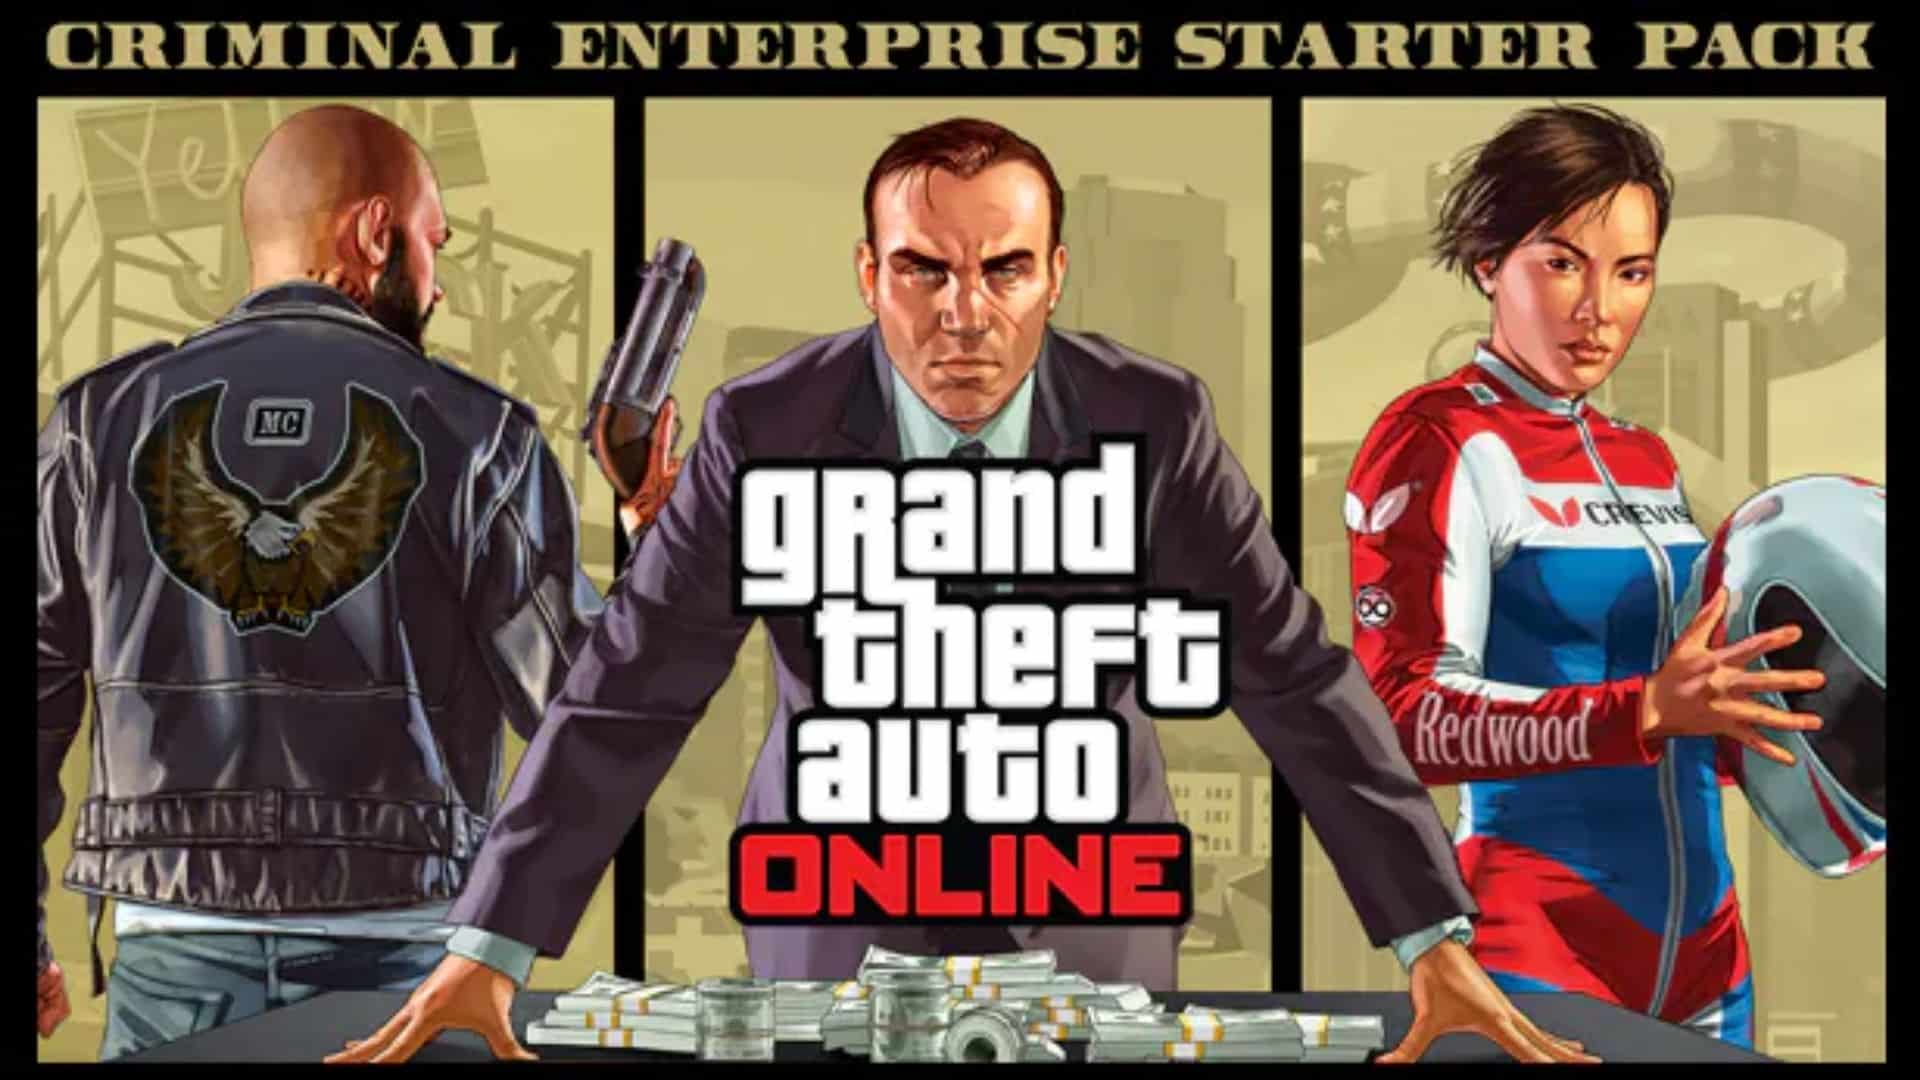 How to claim GTA Online's bonus Criminal Enterprise starter pack